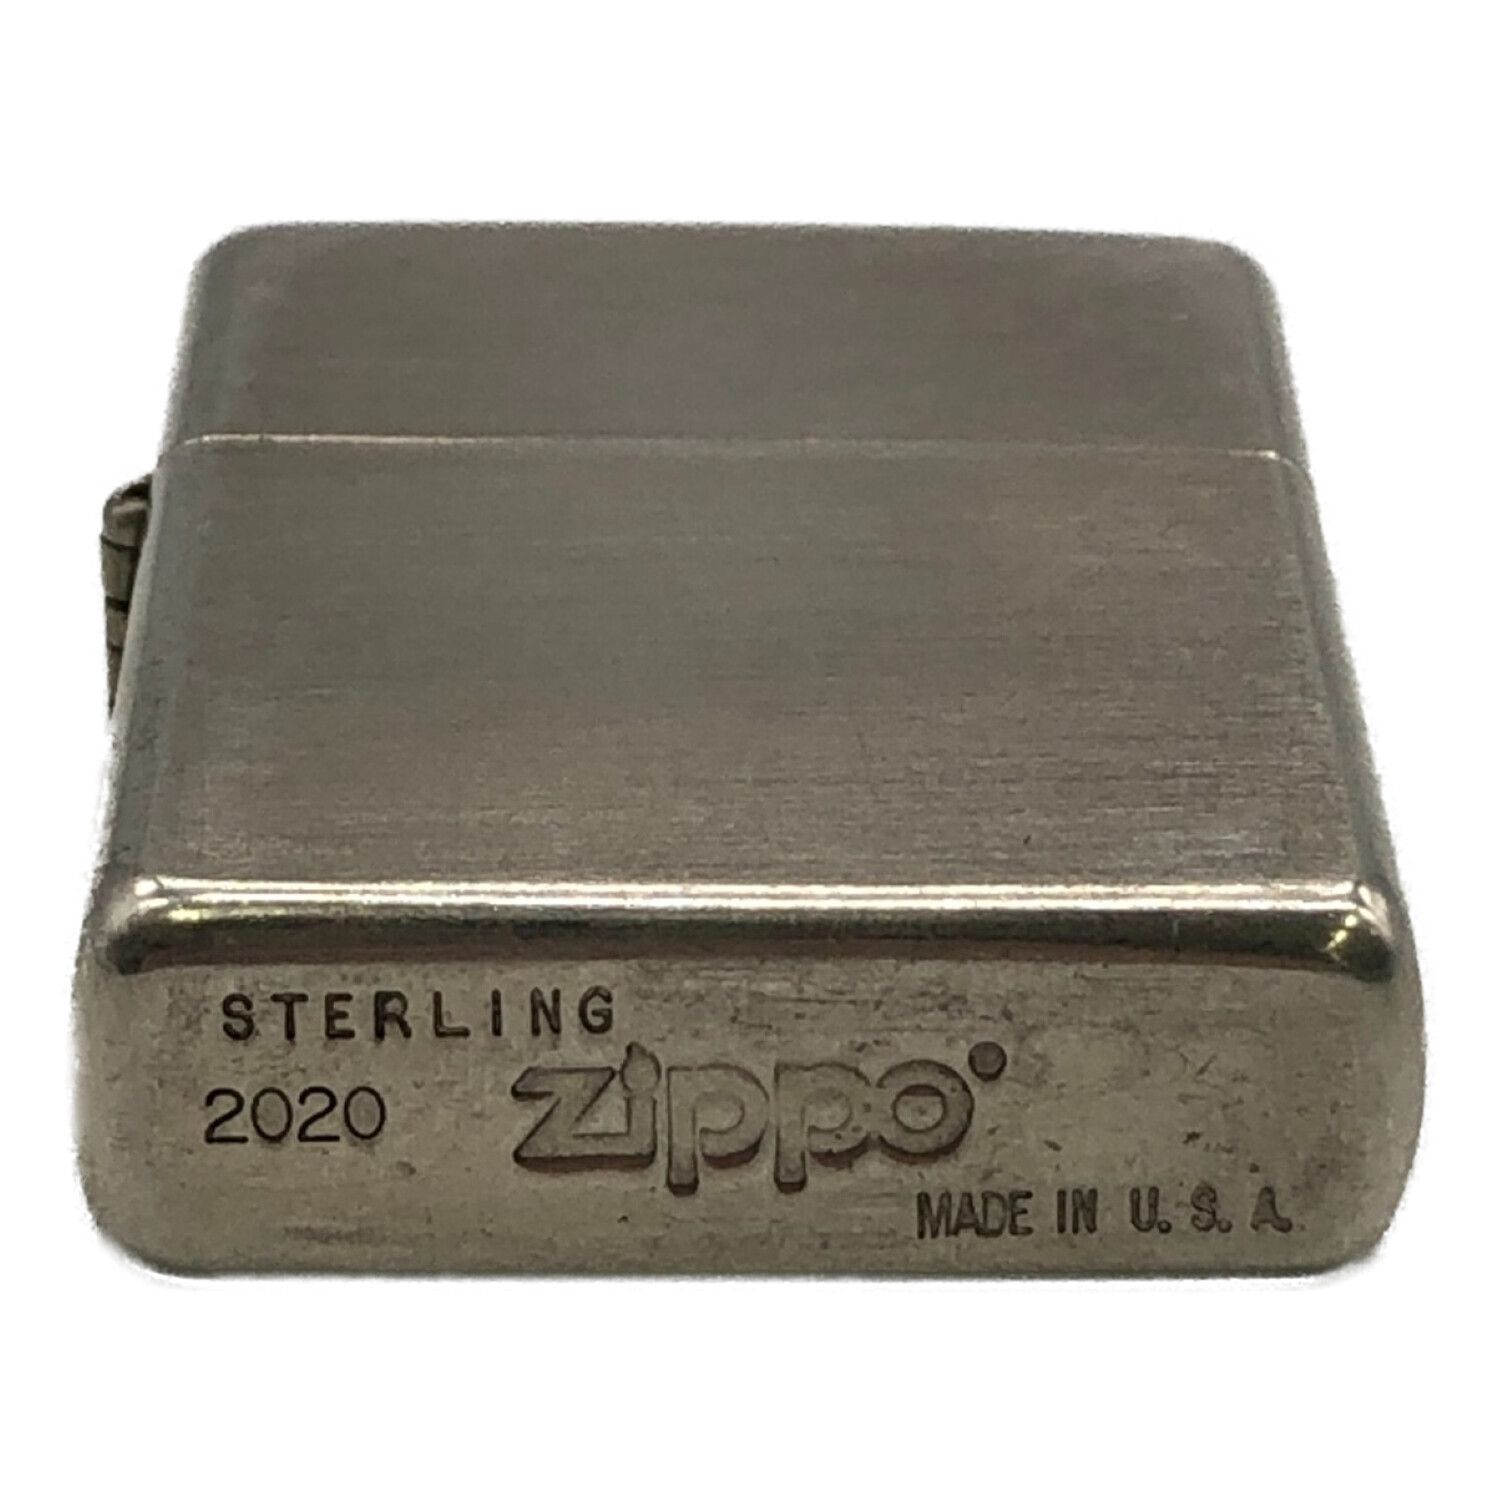 ZIPPO (ジッポ) シルバー 2020年 6月 STERLING SILVER (スターリング 